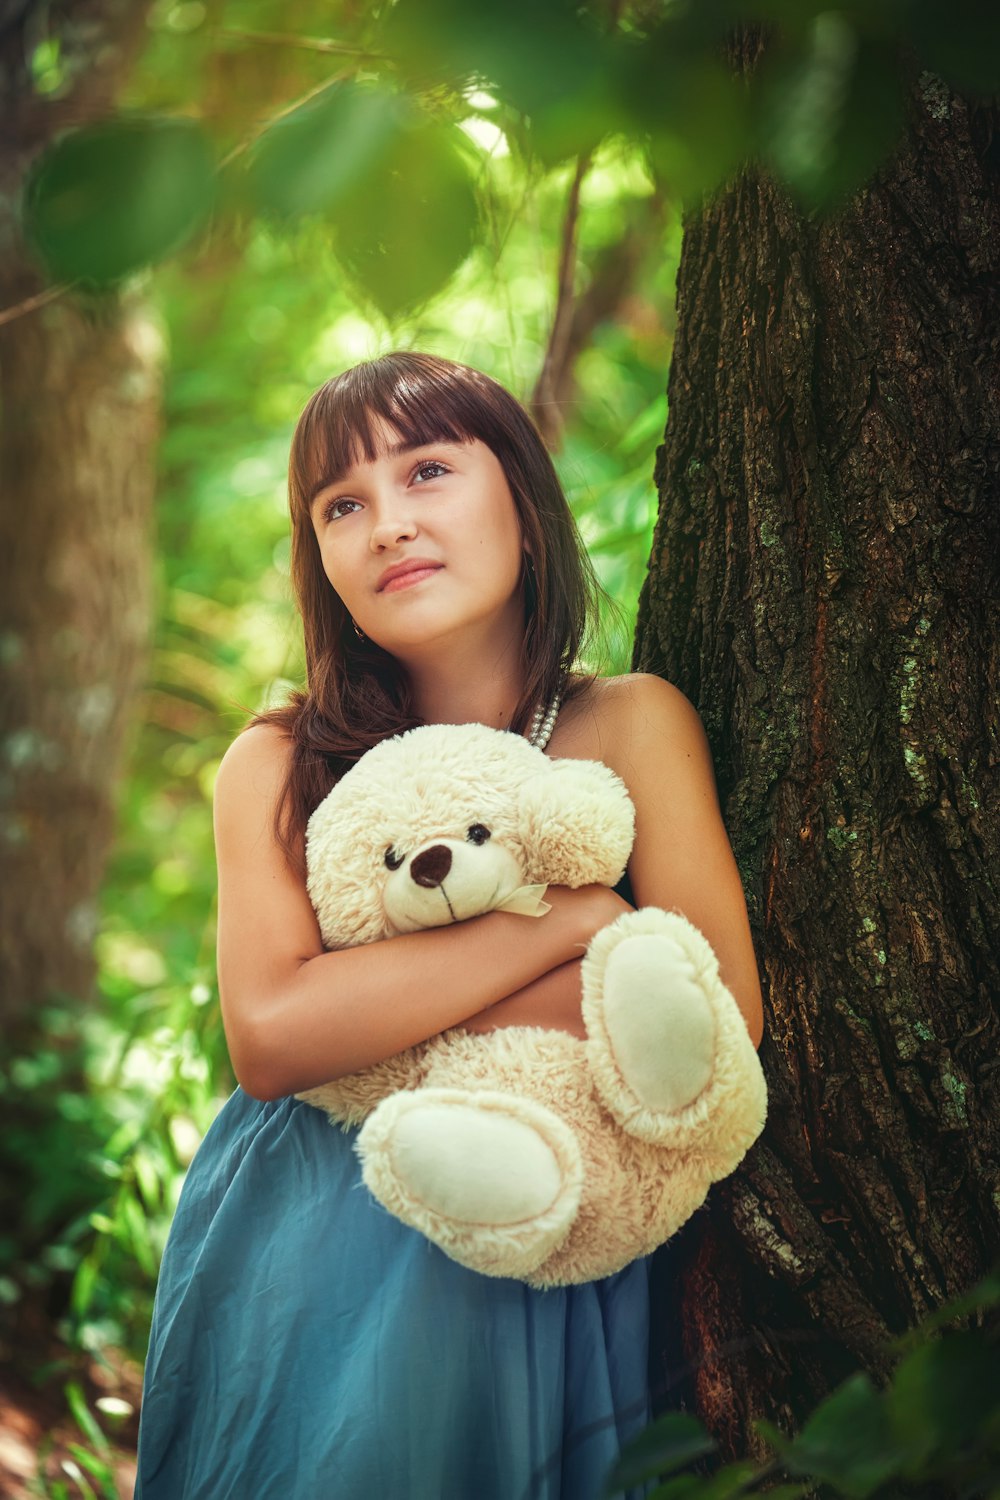 girl in blue sleeveless dress holding white bear plush toy